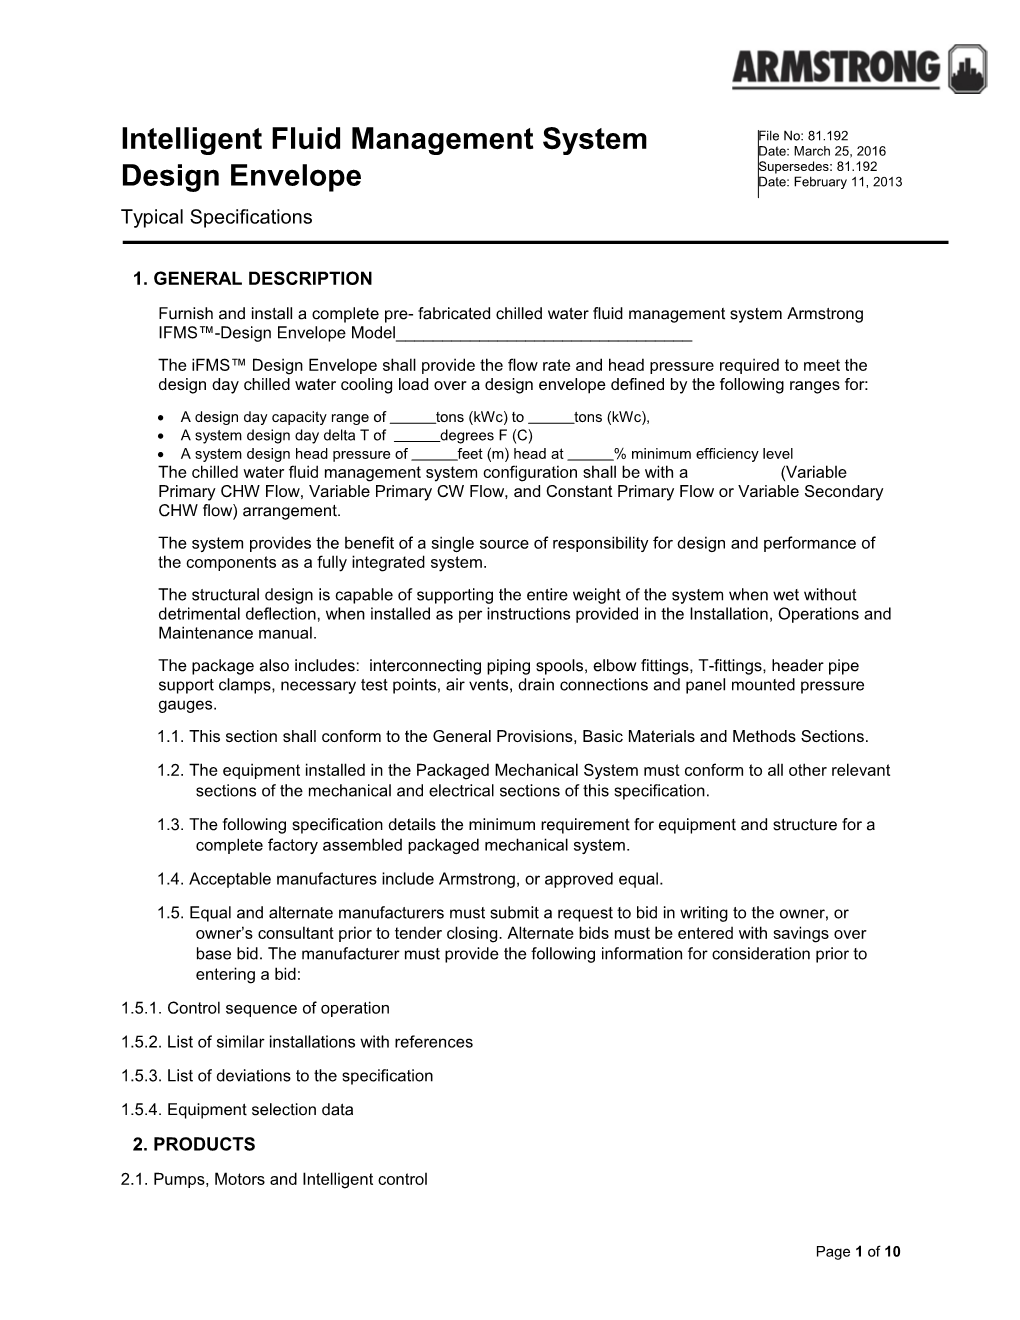 Intelligent Fluid Management System Design Envelope